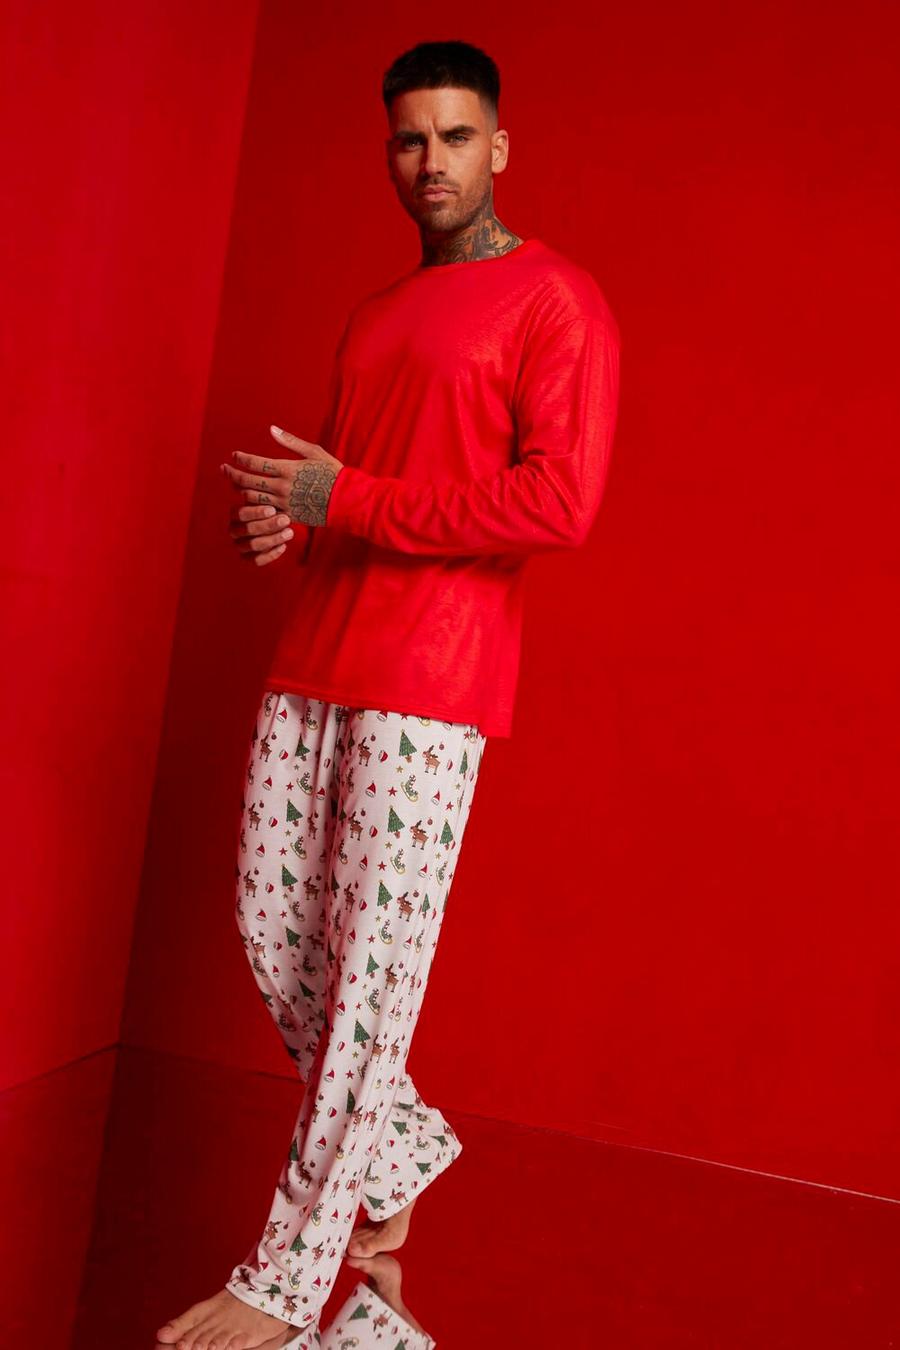 Pijama de hombre con estampado de gorros de Papá Noel, Red rosso